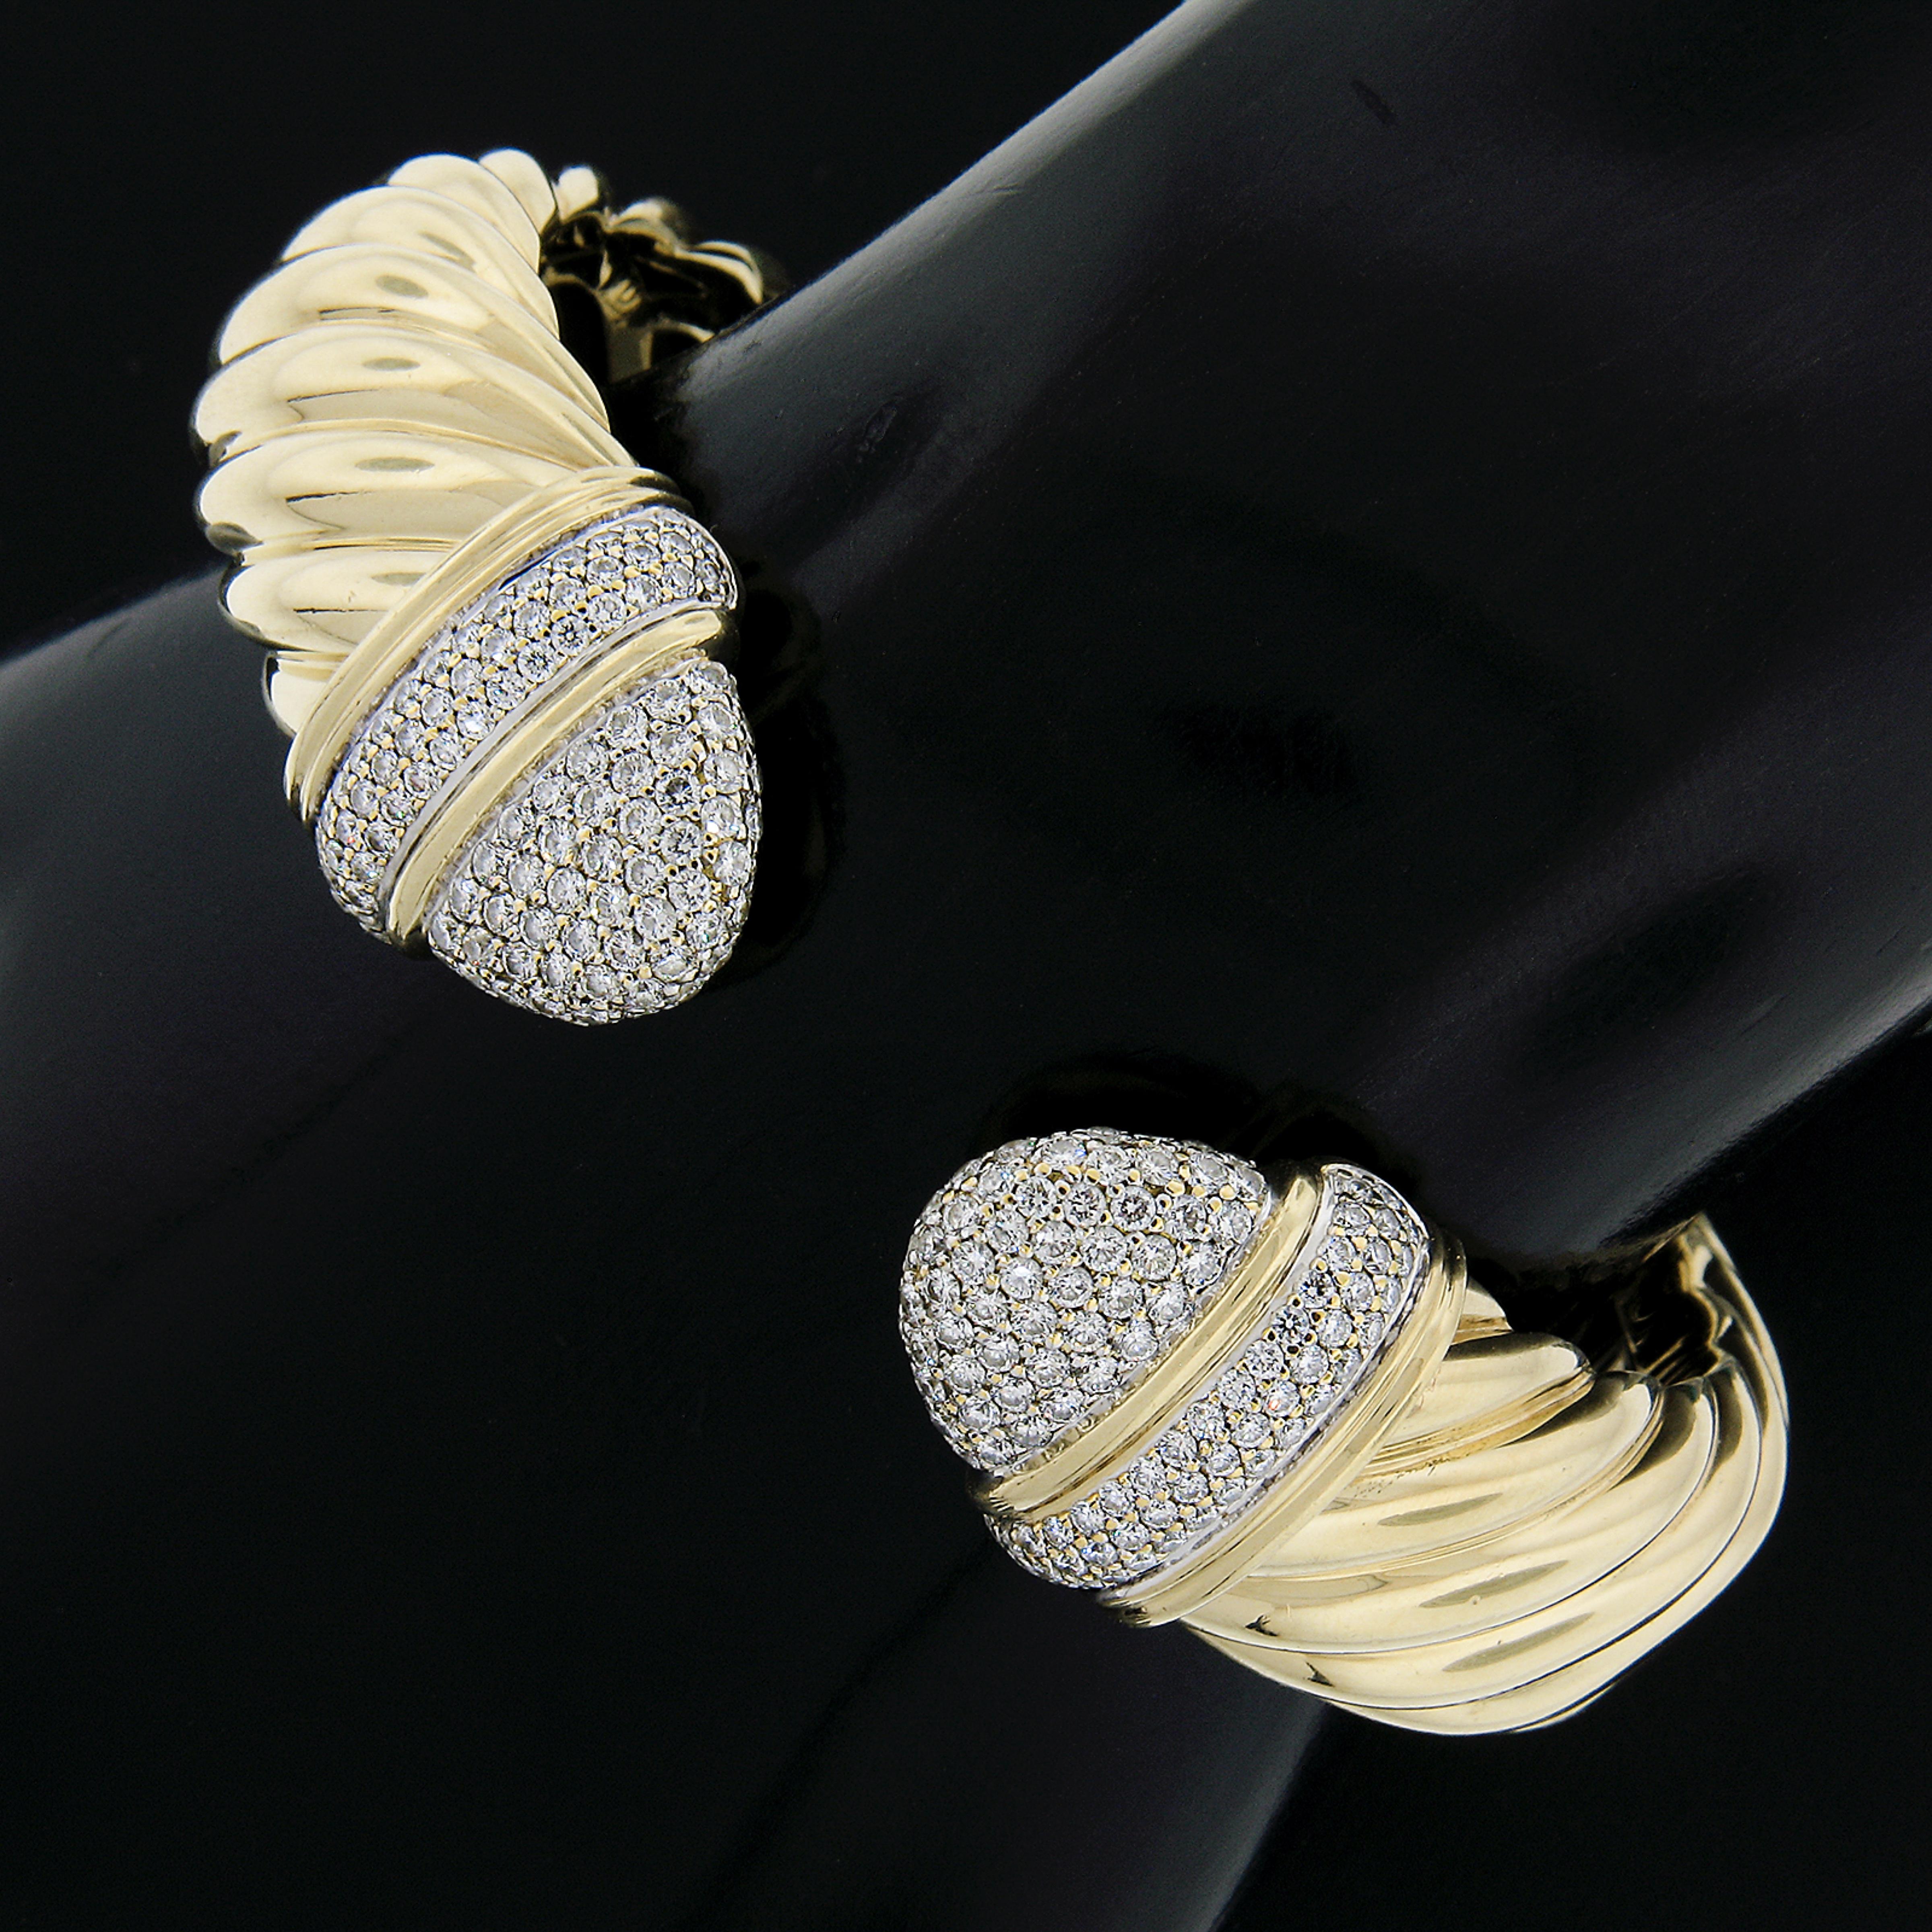 David Yurman 18k Two Tone Gold Pave Diamond Open Waverly Cuff Bangle Bracelet 1